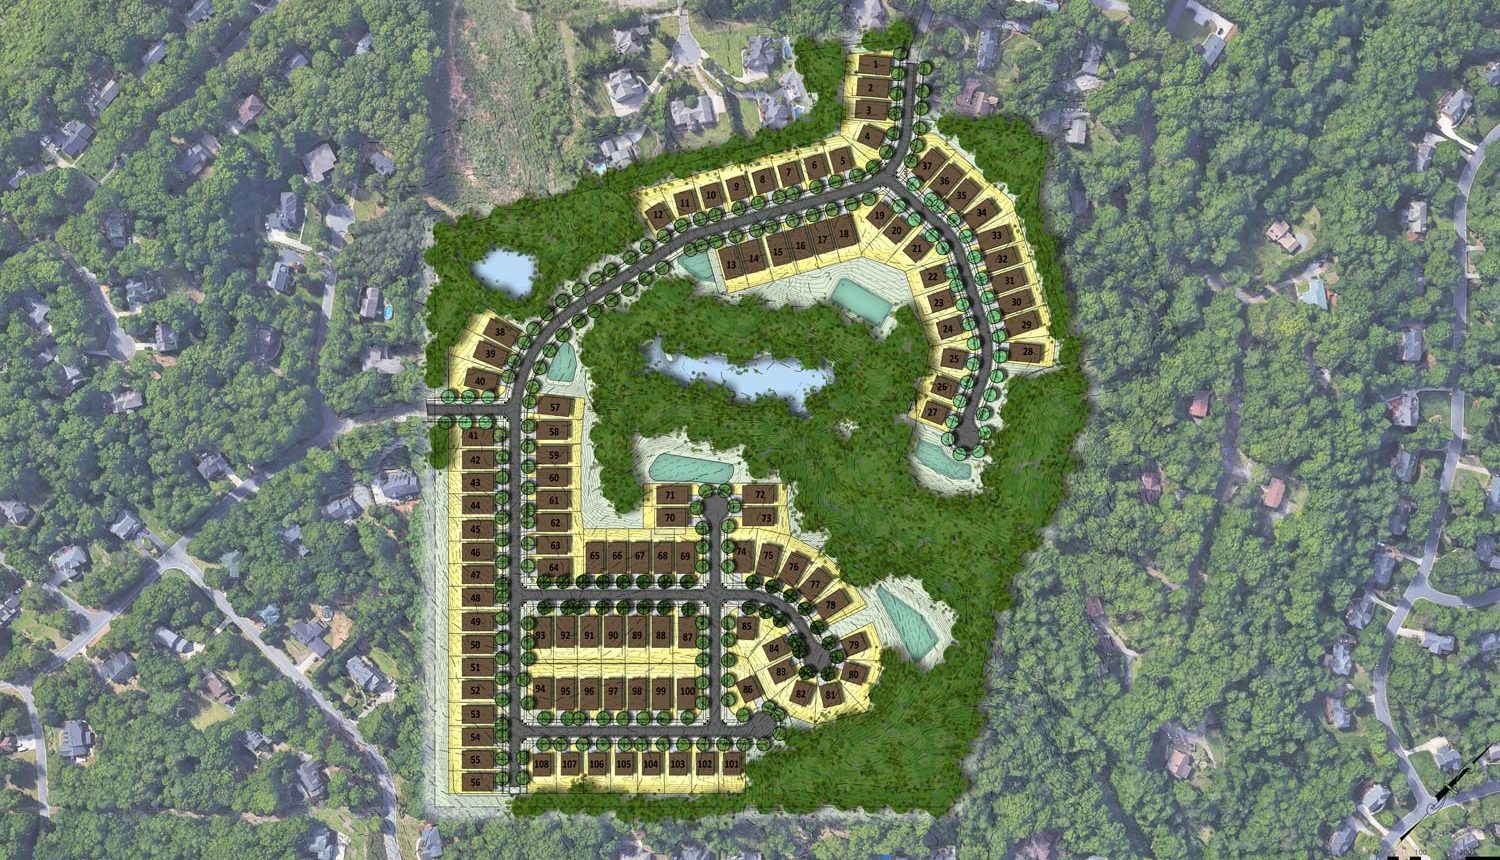 Reedy Creek housing community aerial siteplan